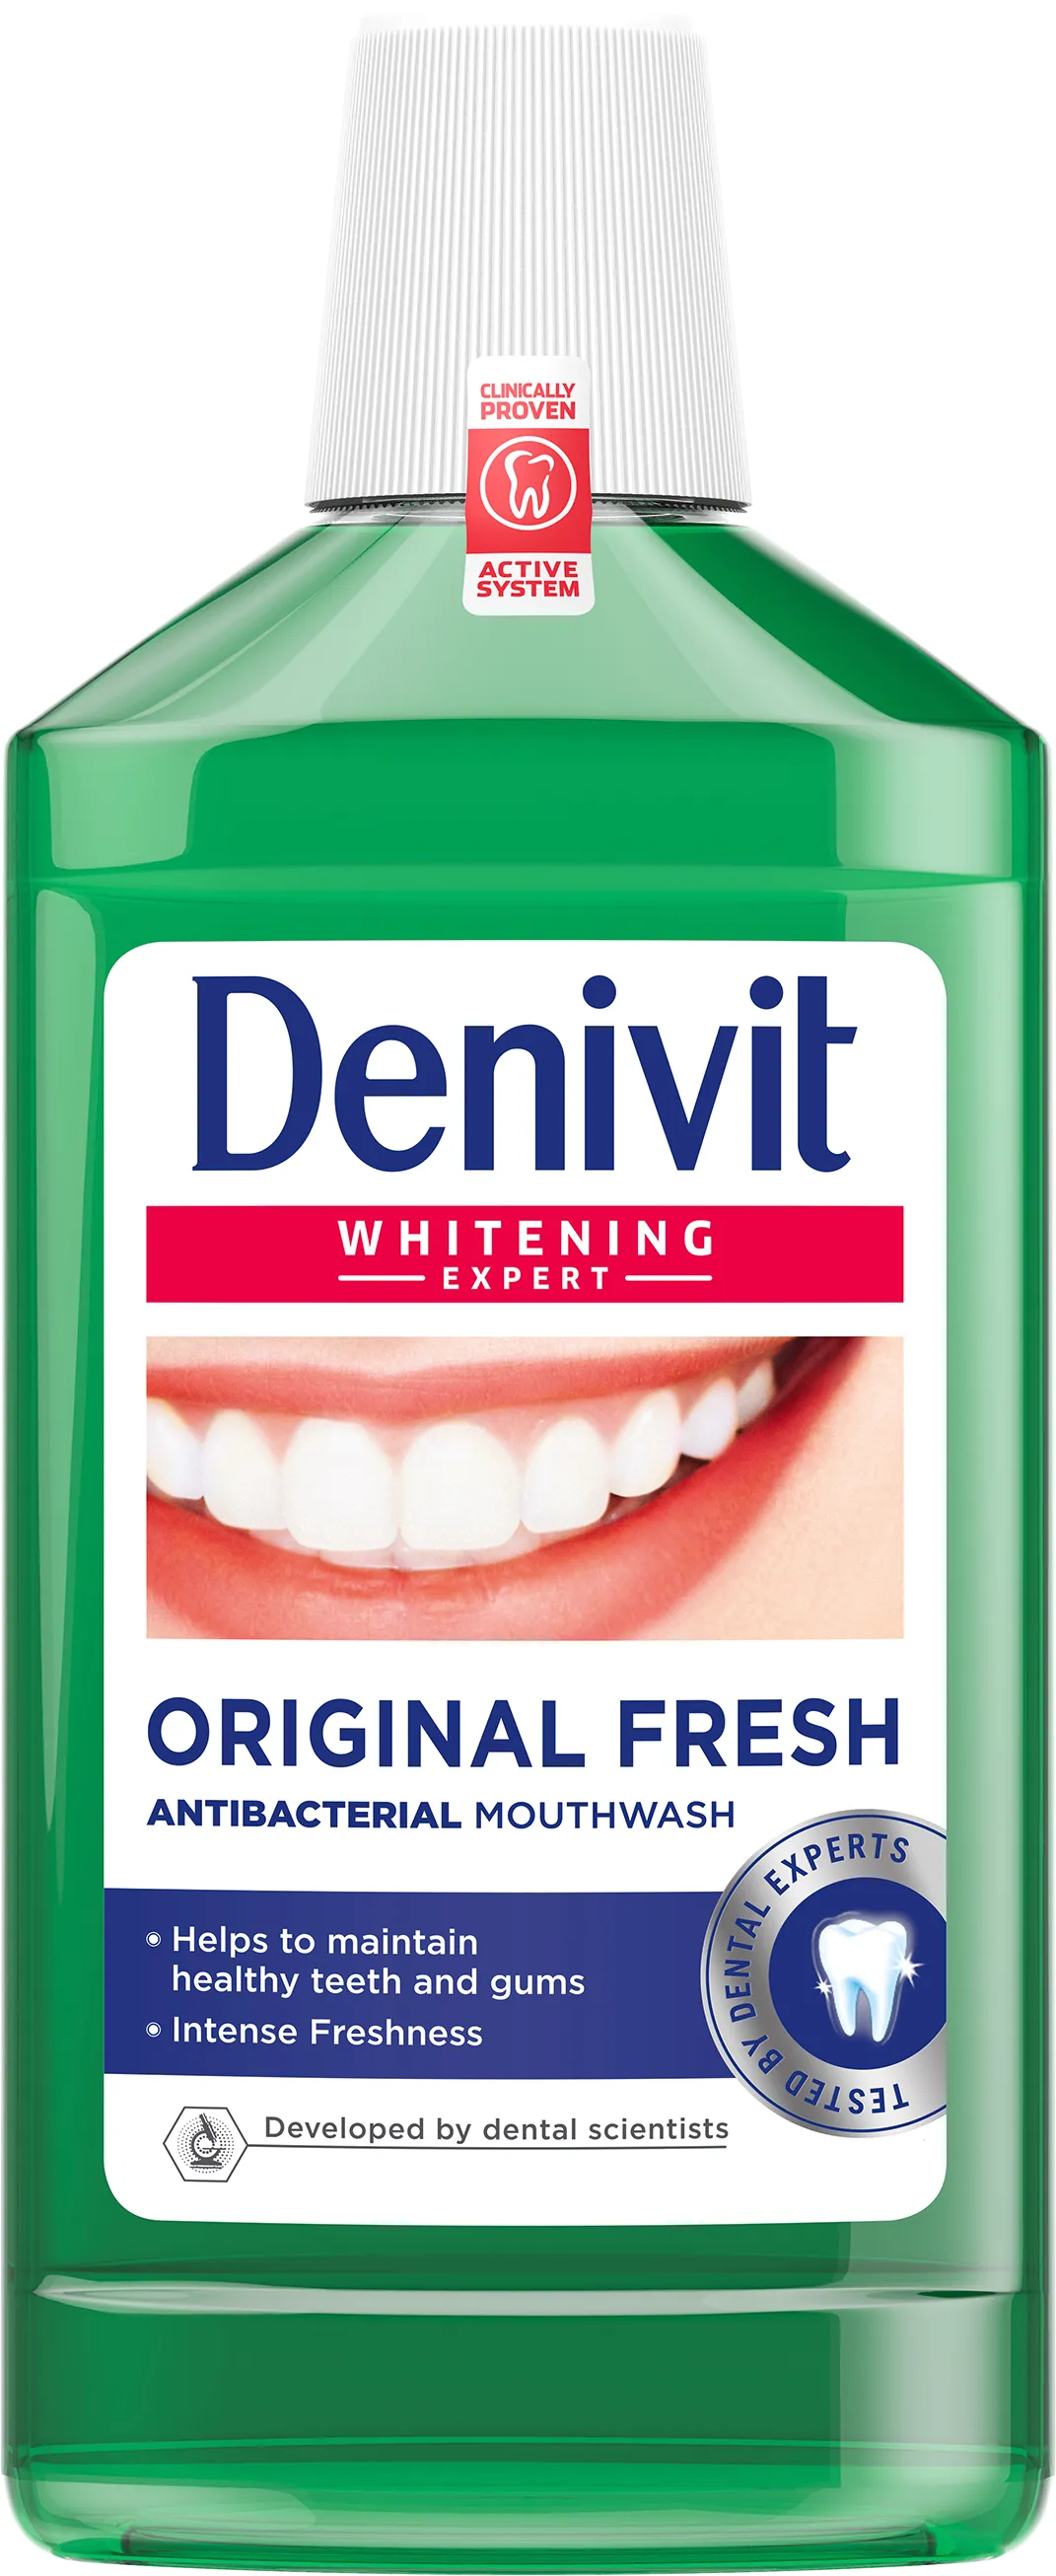 Denivit Whitening Expert Original Fresh płyn do płukania jamy ustnej, 500 ml